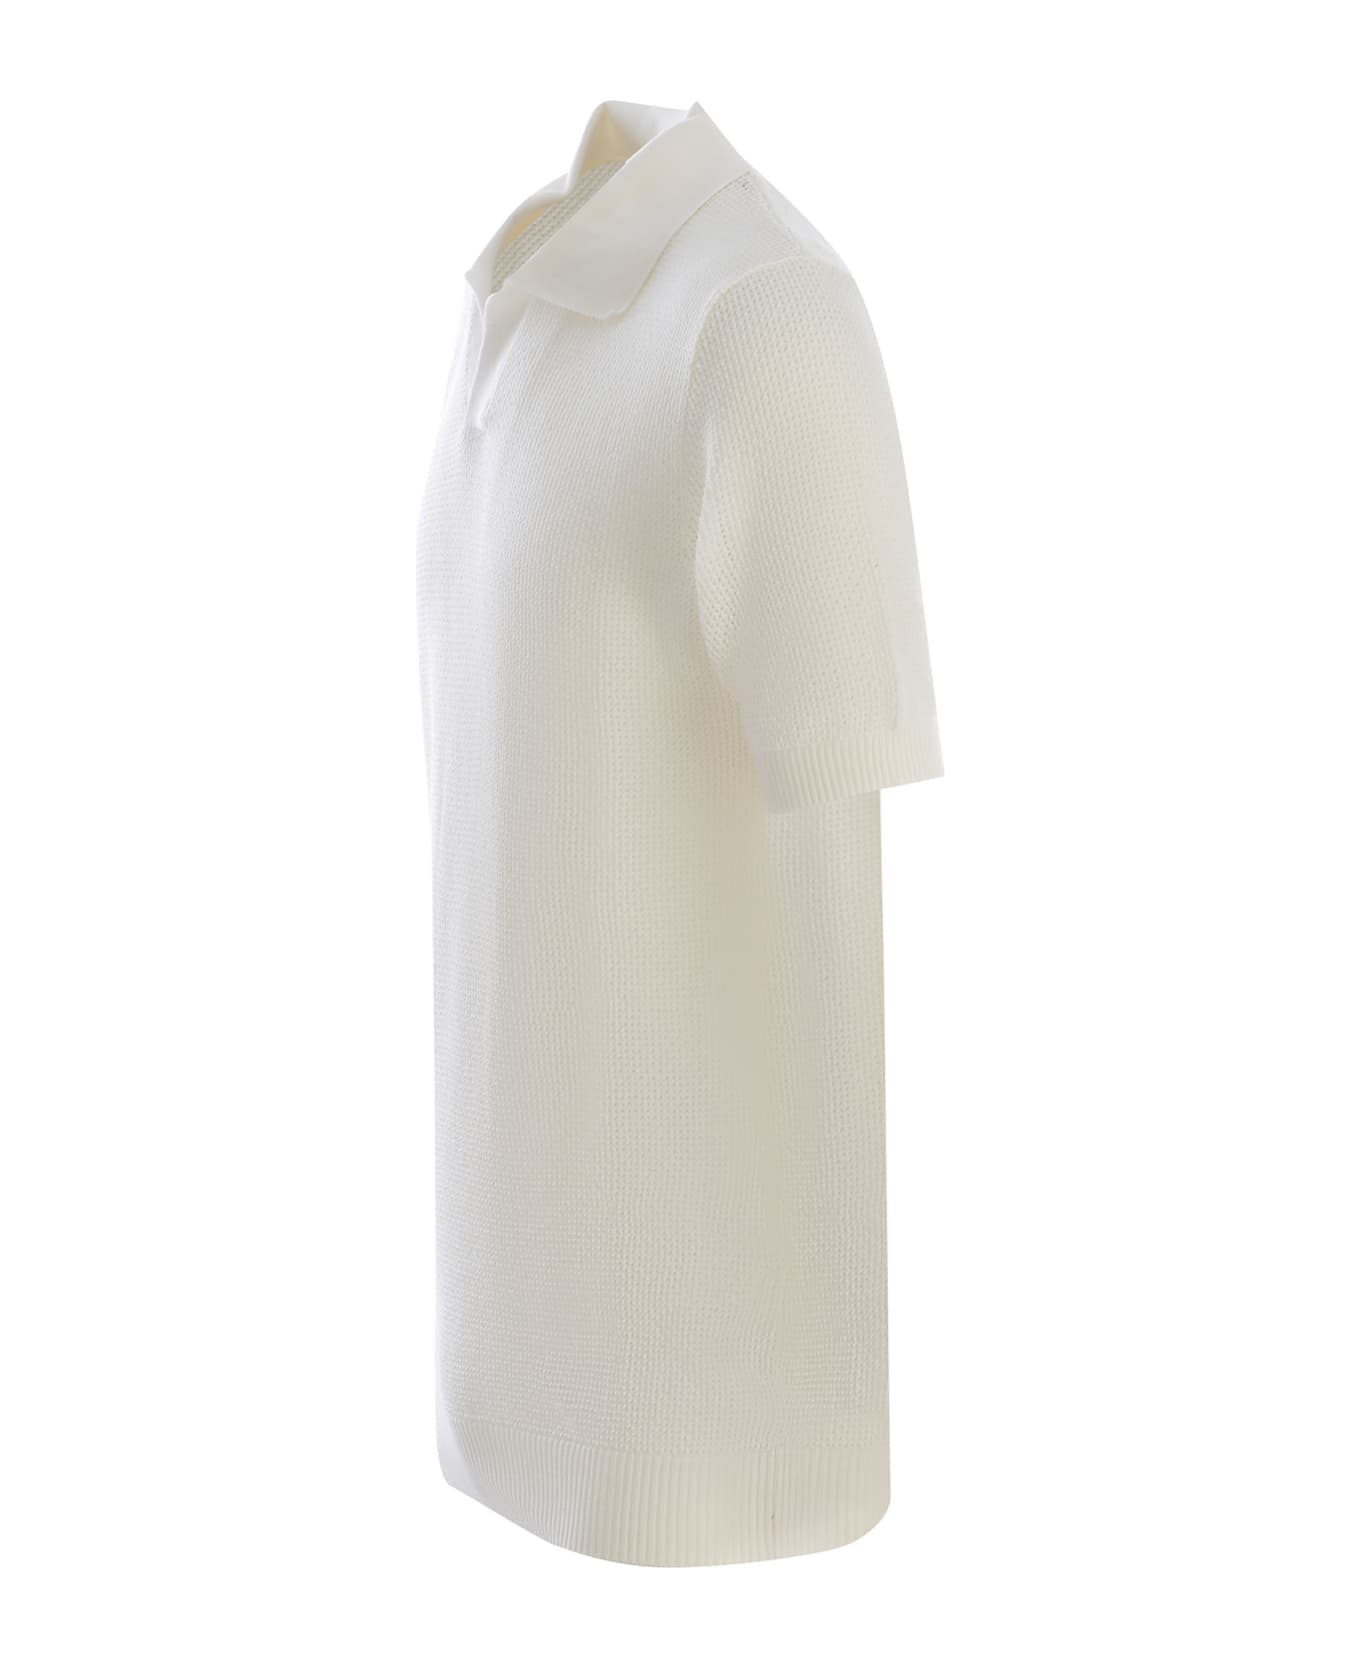 Tagliatore Polo Shirt Tagliatore Made Of Cotton Thread - Off white ポロシャツ